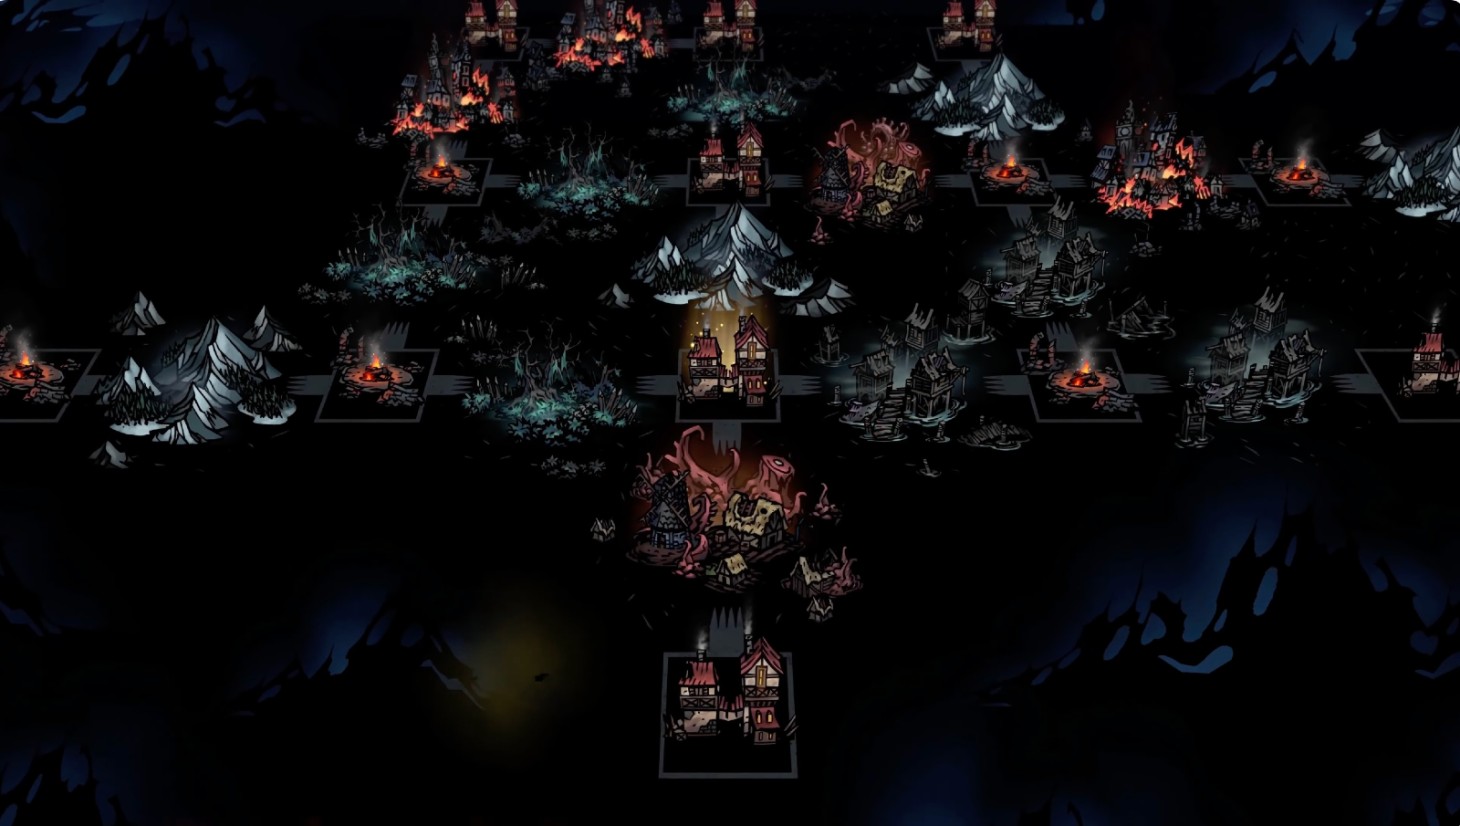 darkest dungeons ii kingdoms update new trailer gameplay game mode